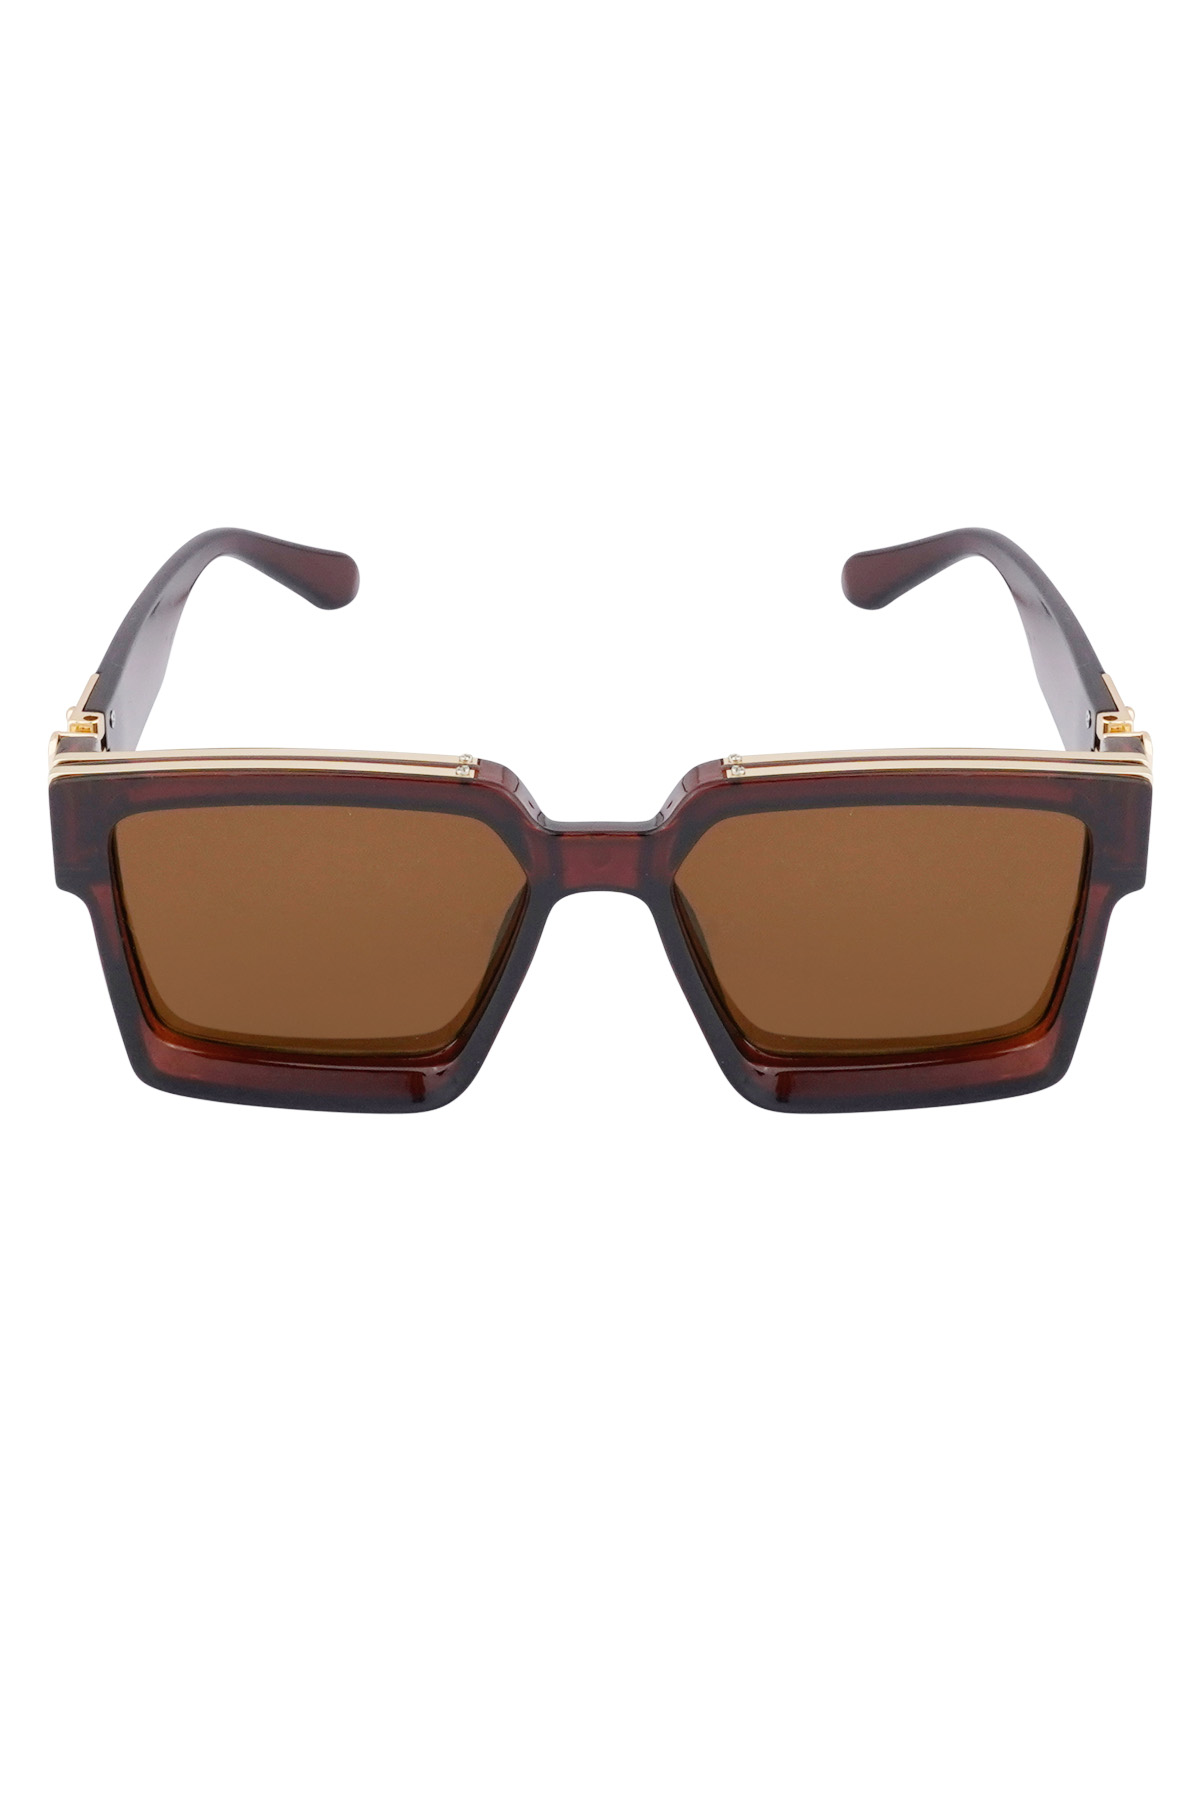 Shine bright sunglasses - dark brown h5 Picture4